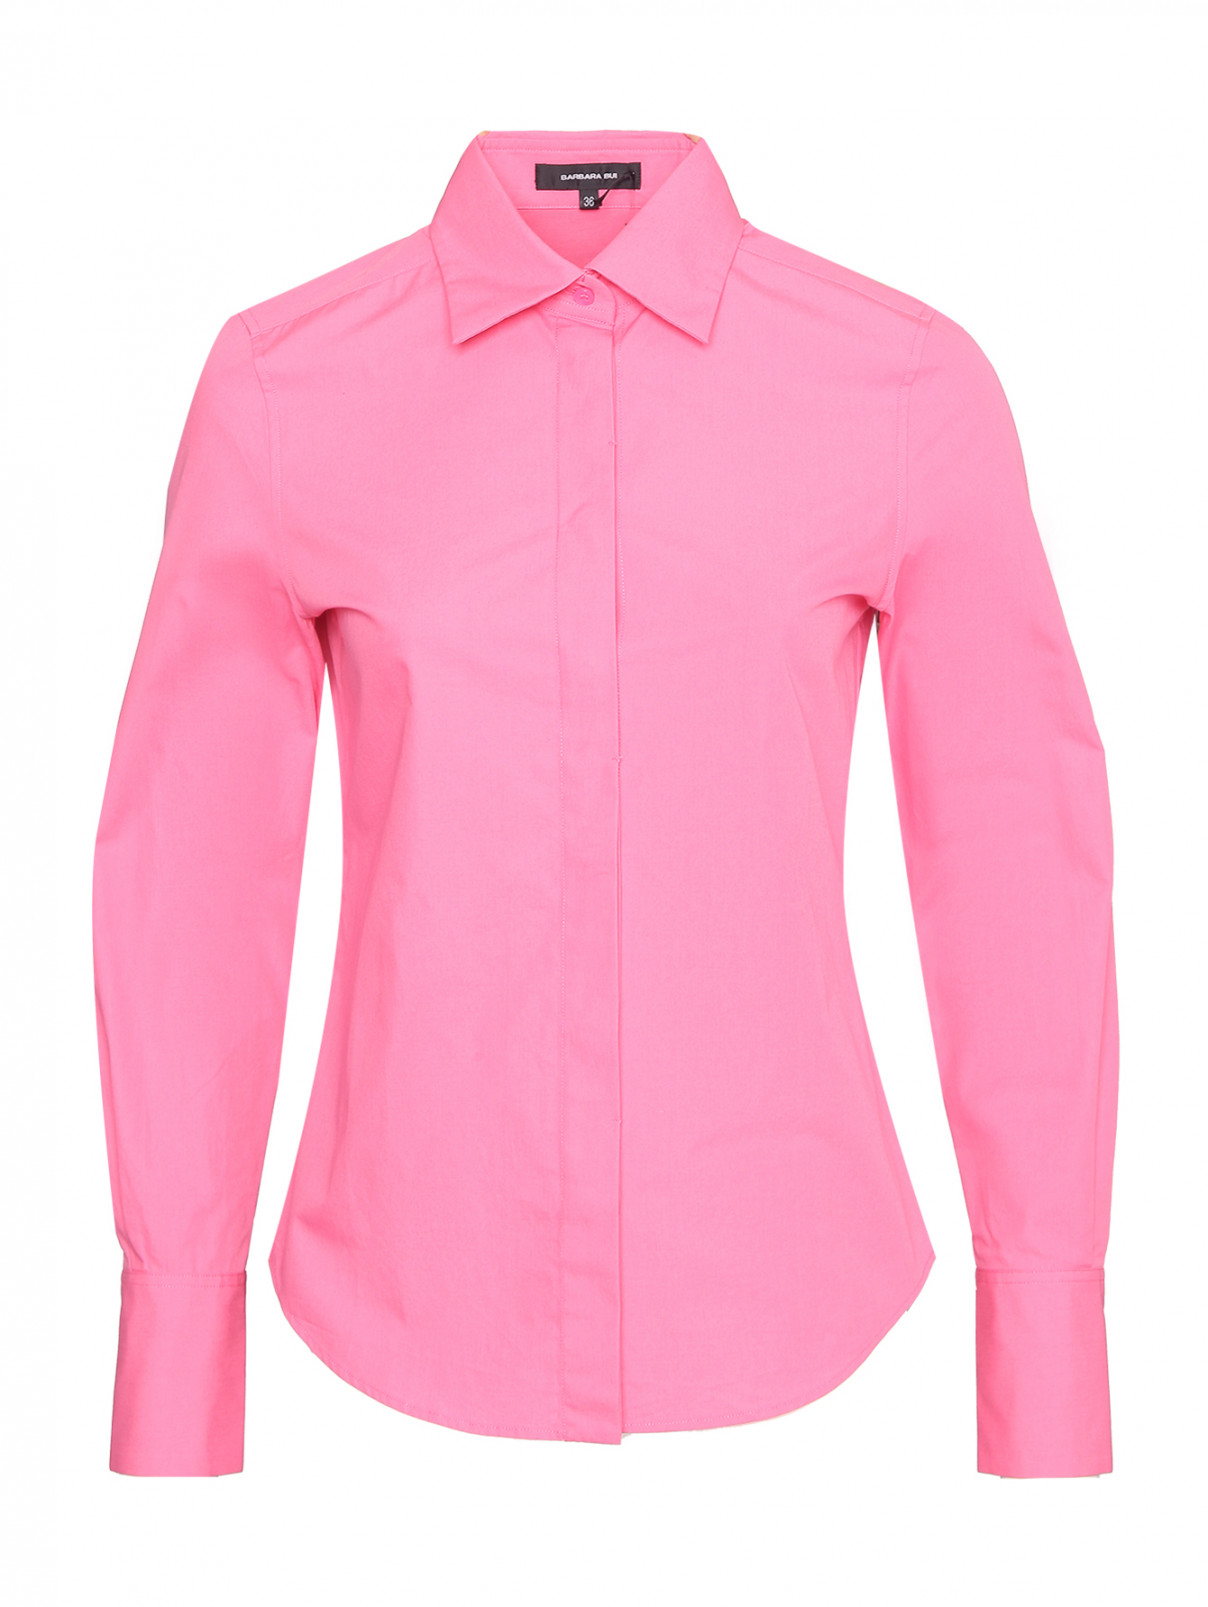 Рубашка из хлопка на пуговицах Barbara Bui  –  Общий вид  – Цвет:  Розовый